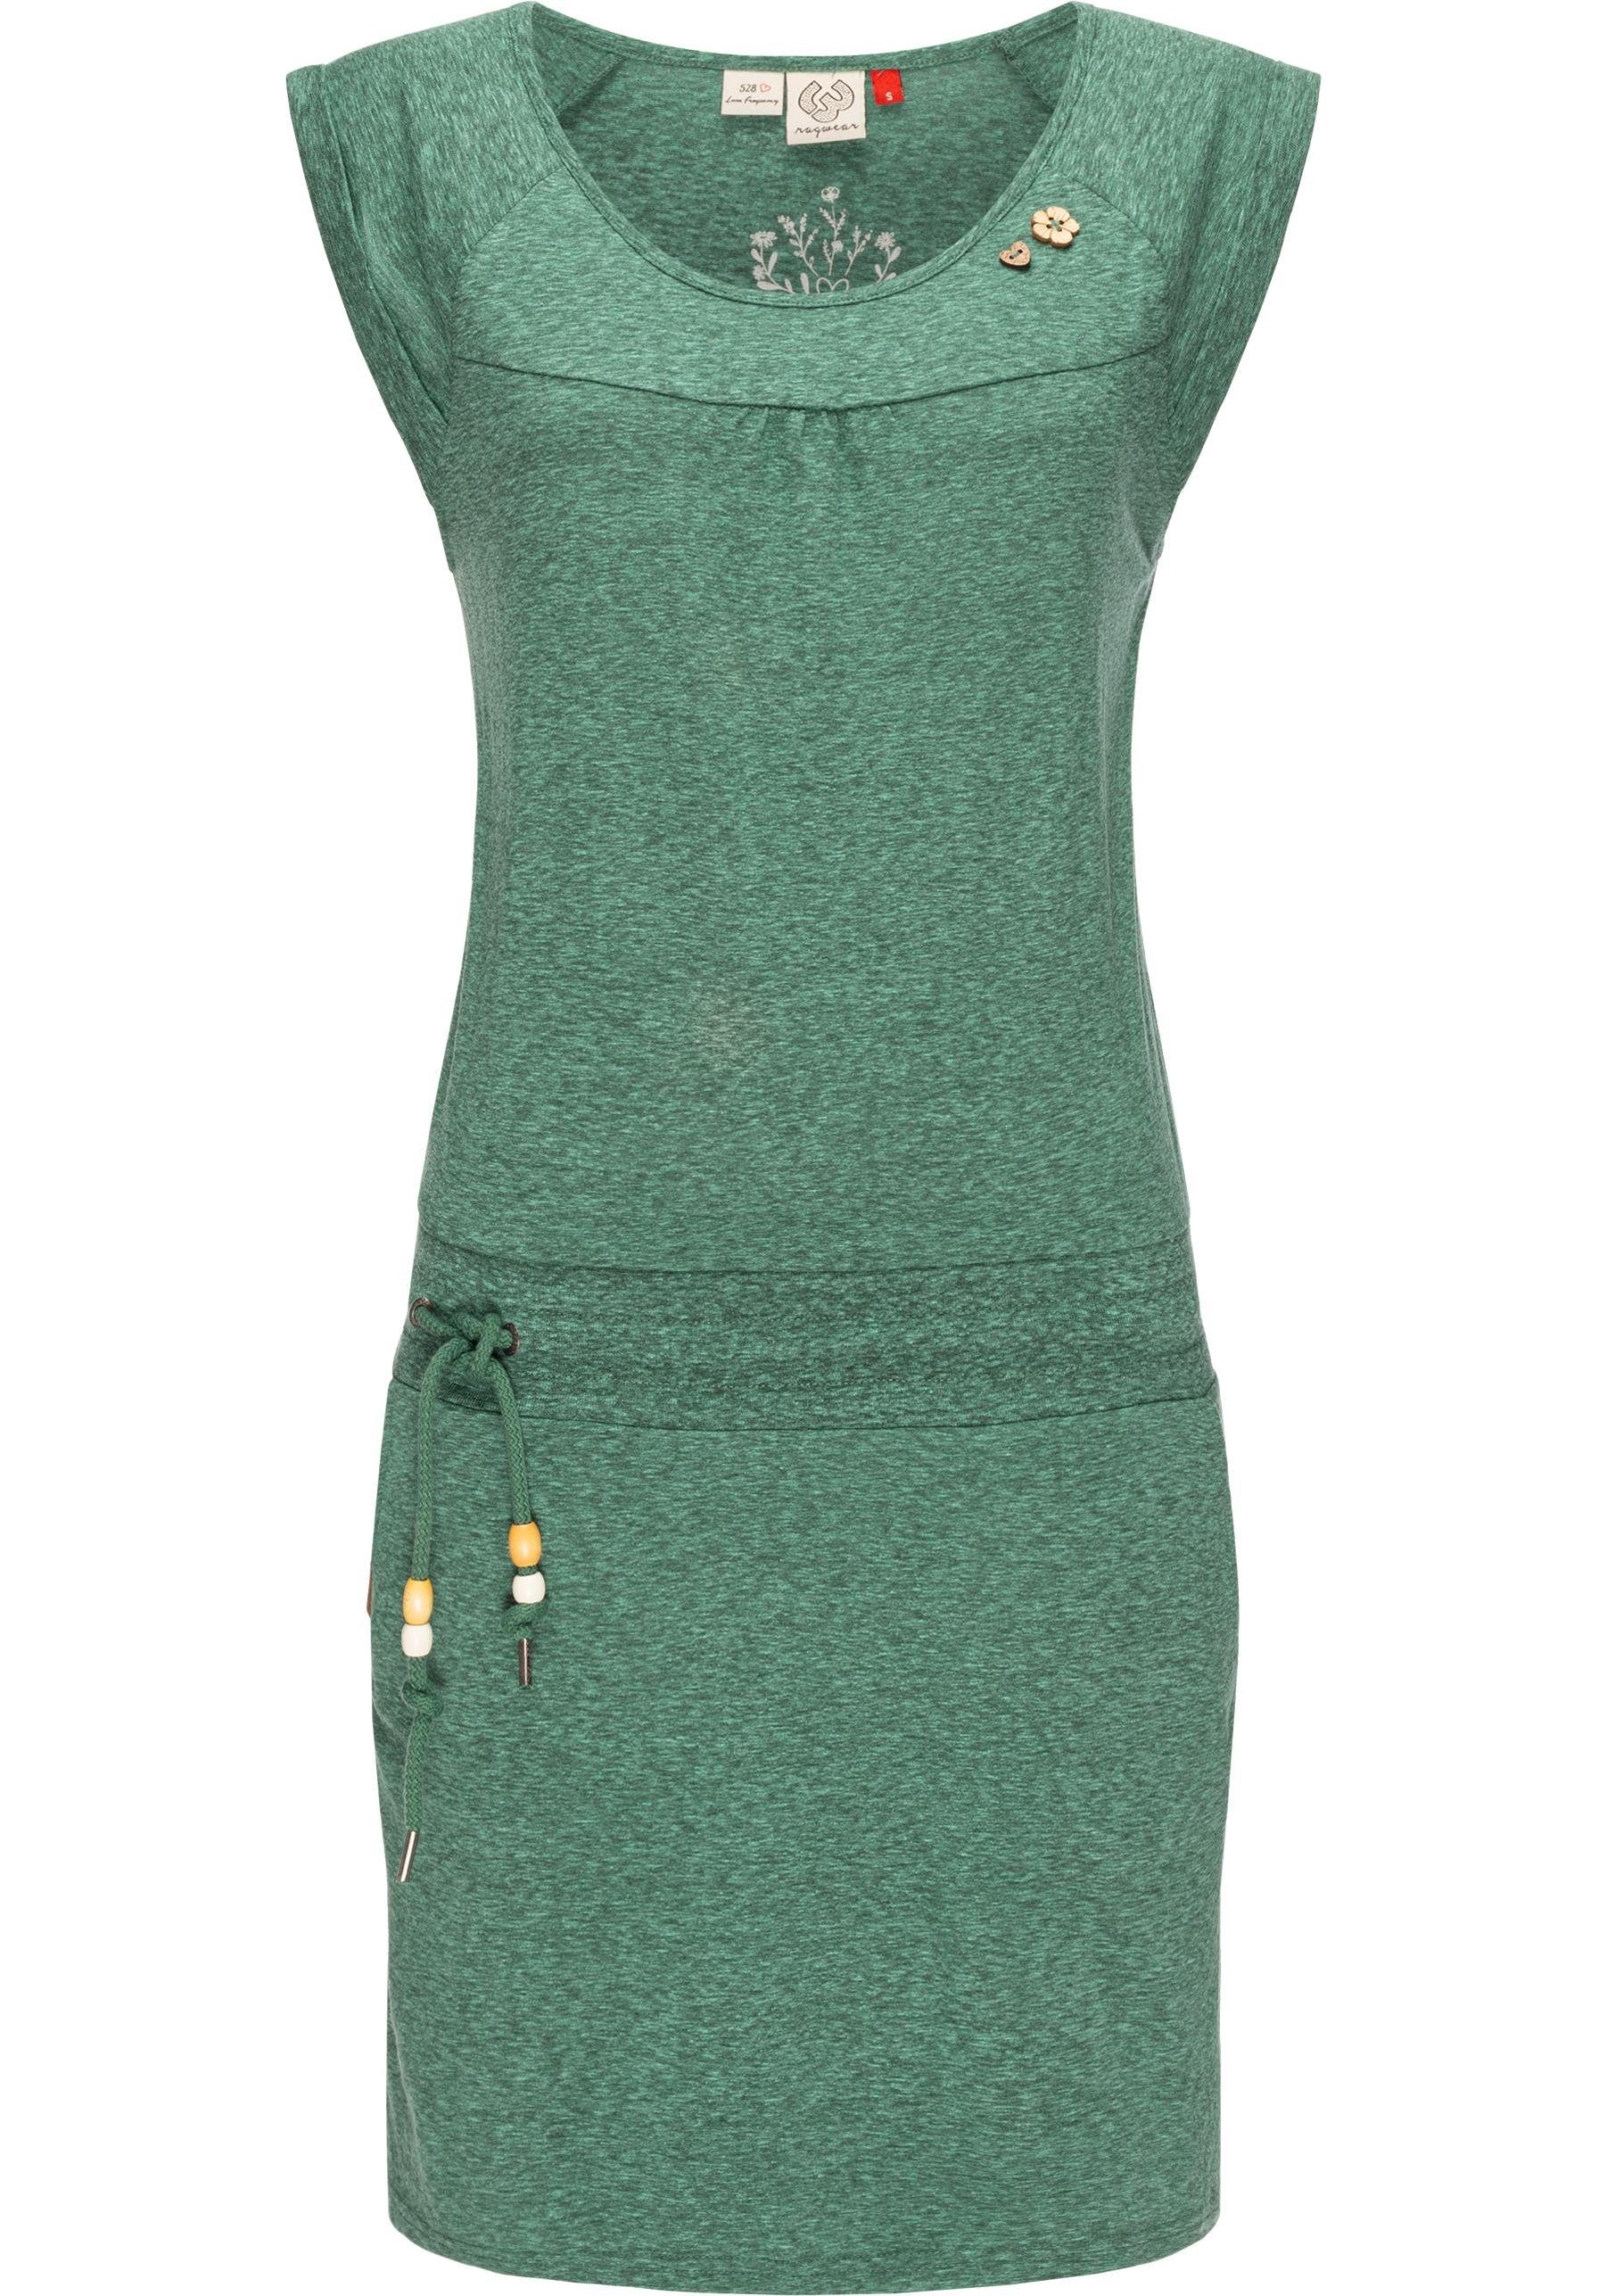 Ragwear Sommerkleid Penelope leichtes Baumwoll Kleid mit Print moosgrün